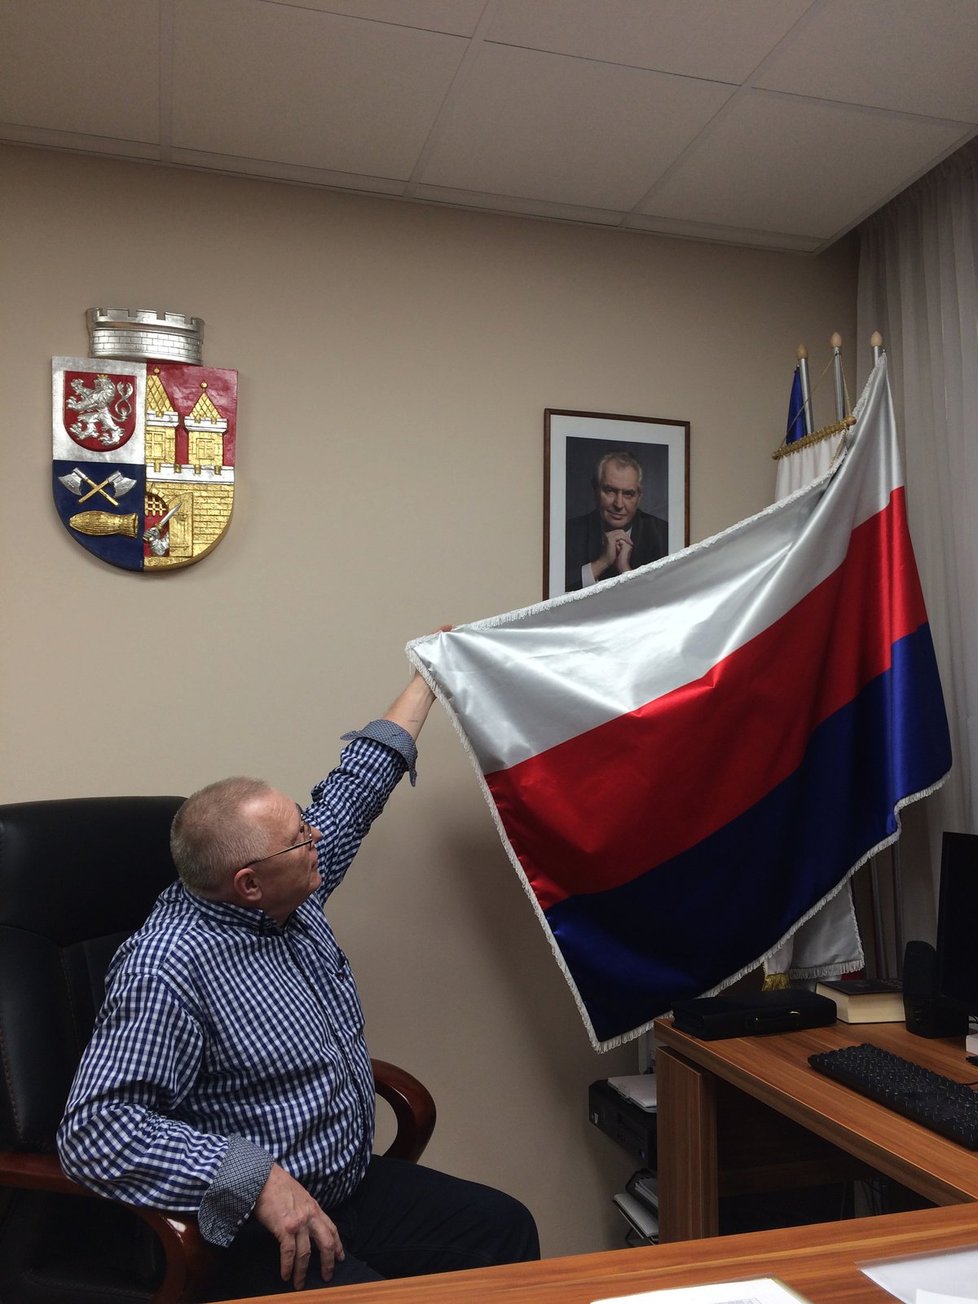 Žádná ruská vlajka, ale vlajka městské části Prahy 10